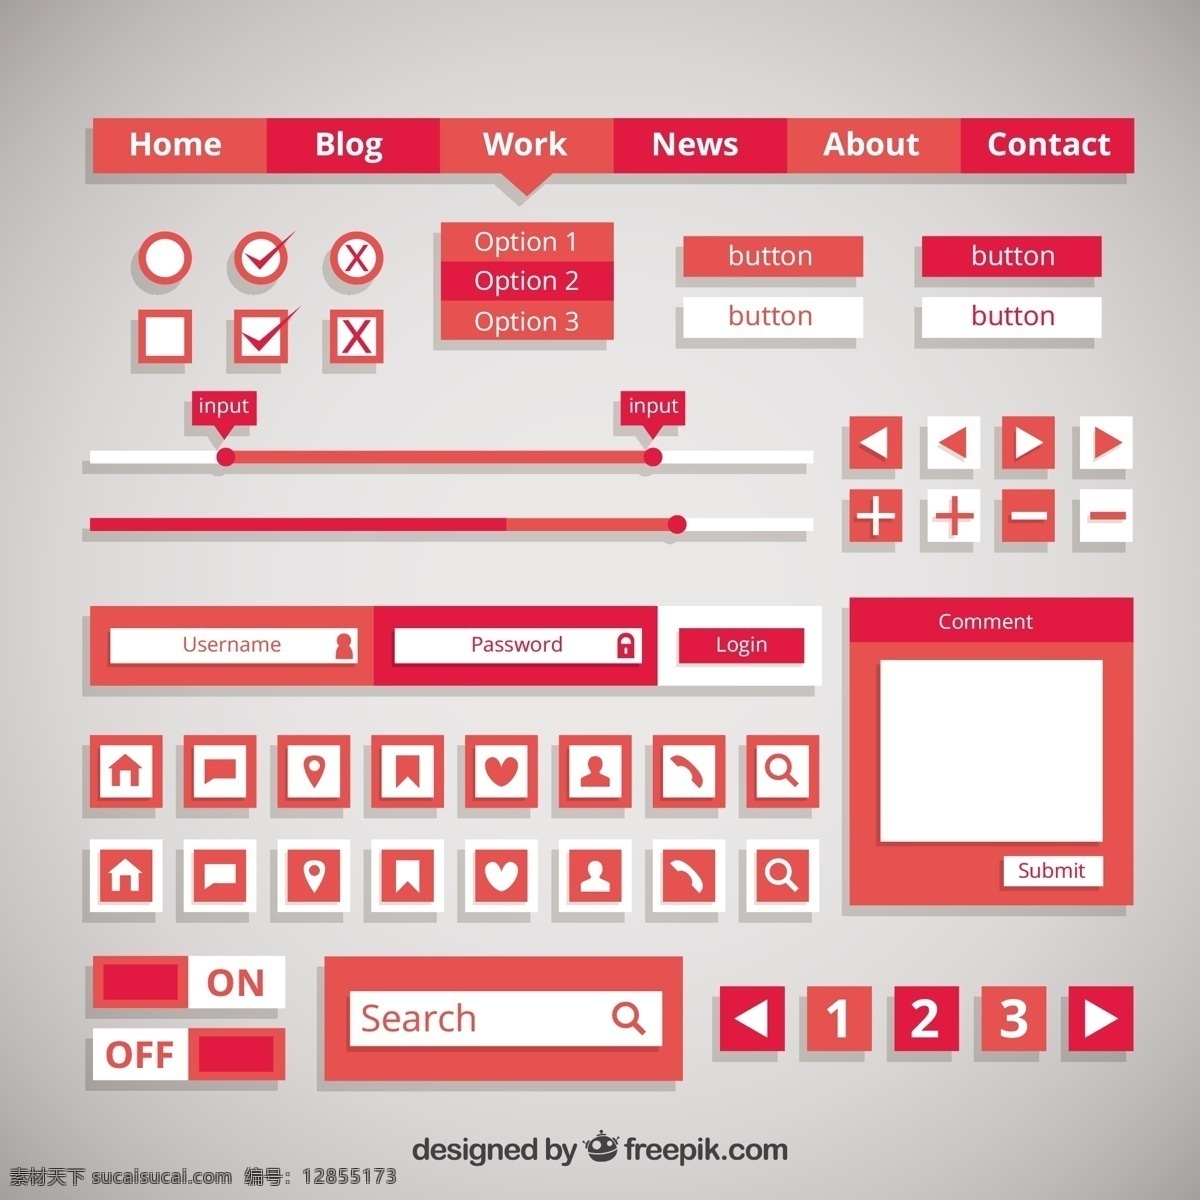 平面设计 中 红色 按钮 元素 横幅 商务 标签 菜单 计算机 技术 模板 网络 平面 网站 网页设计 符号 网站模板 灰色